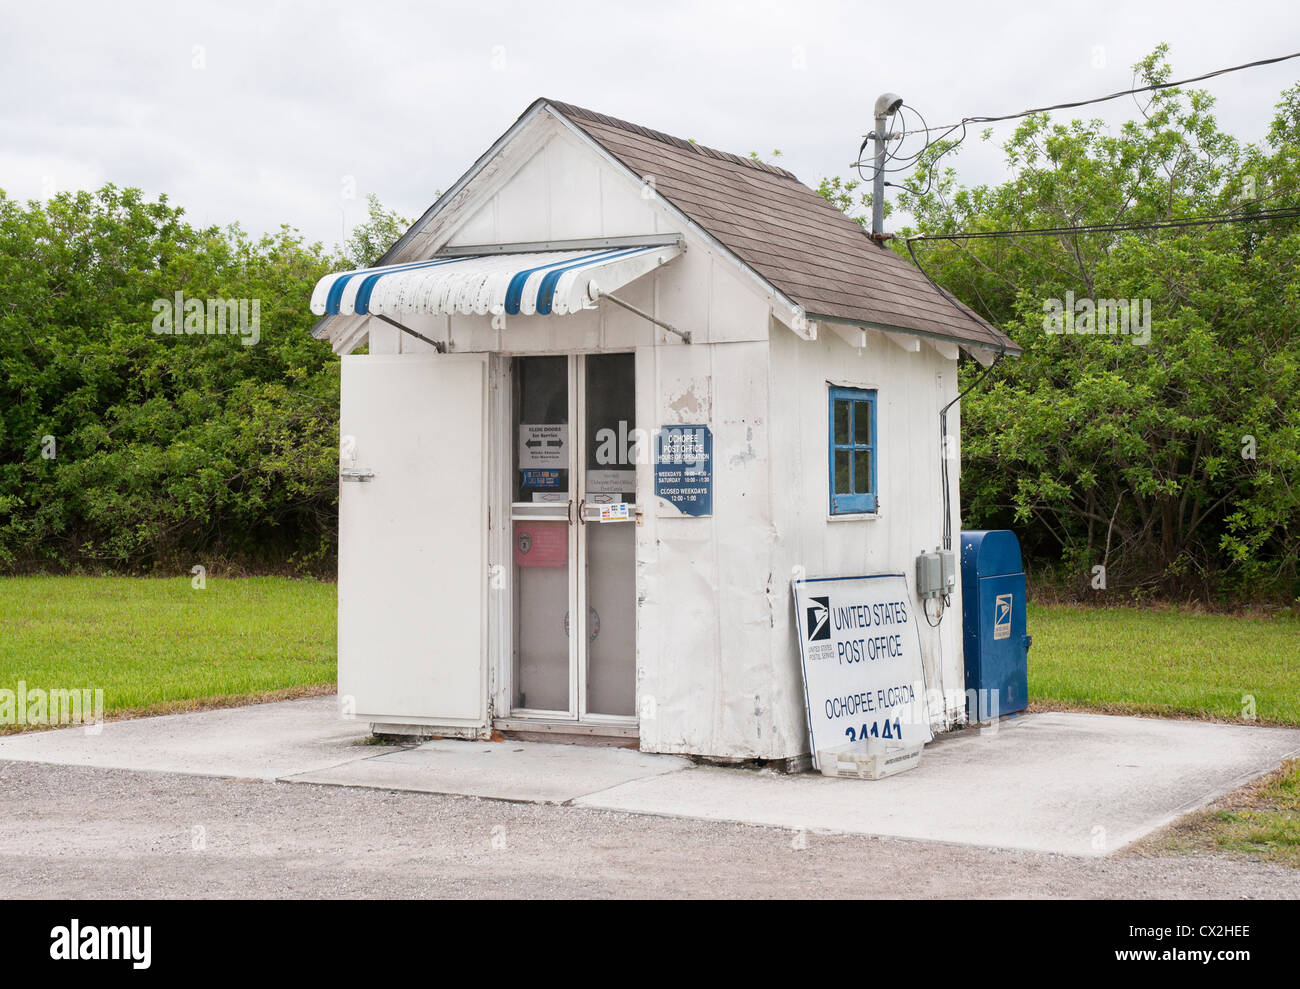 Unterreichenbach Post Office in den USA auf dem Tamiami Trail im South Florida Everglades Bereich kleinste. Stockfoto